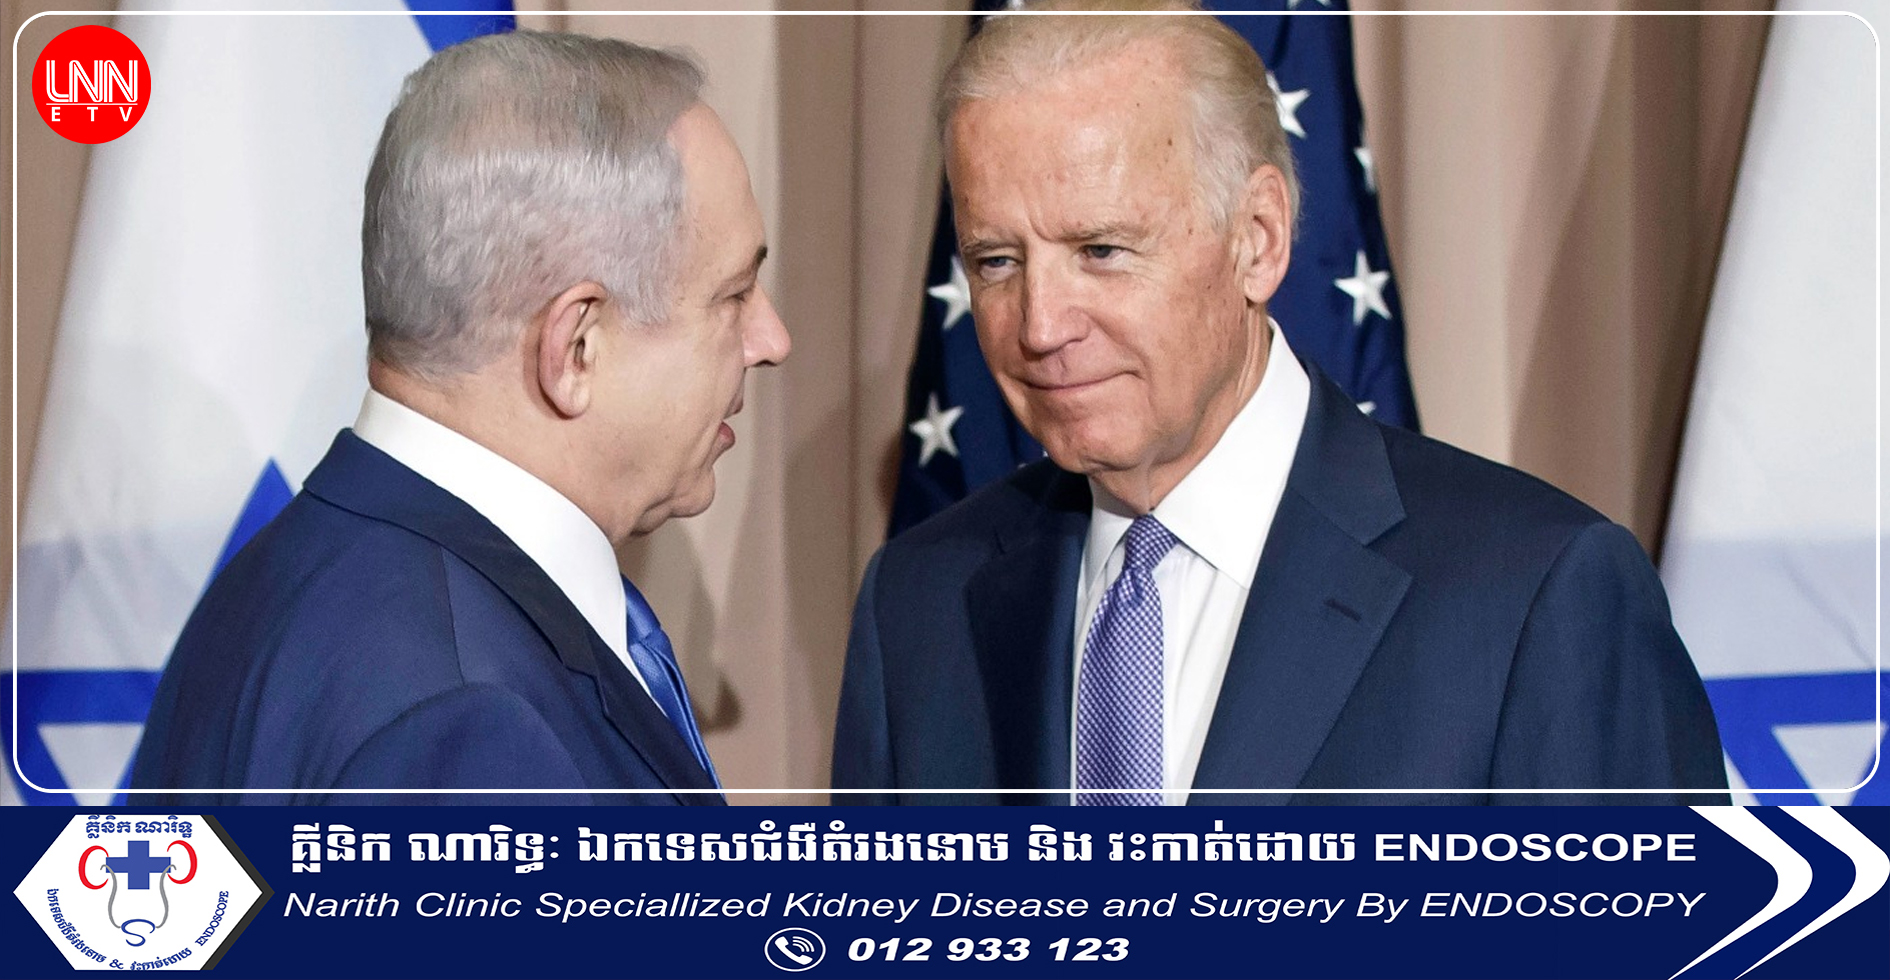 លោក ចូ បៃដិន ជំរុញឱ្យអ៉ីស្រាអែល អនុវត្តតាមច្បាប់សង្រ្គាម ក្រោយលោក Netanyahu ប្ដេជ្ញាកម្ទេចក្រុមហាម៉ាស